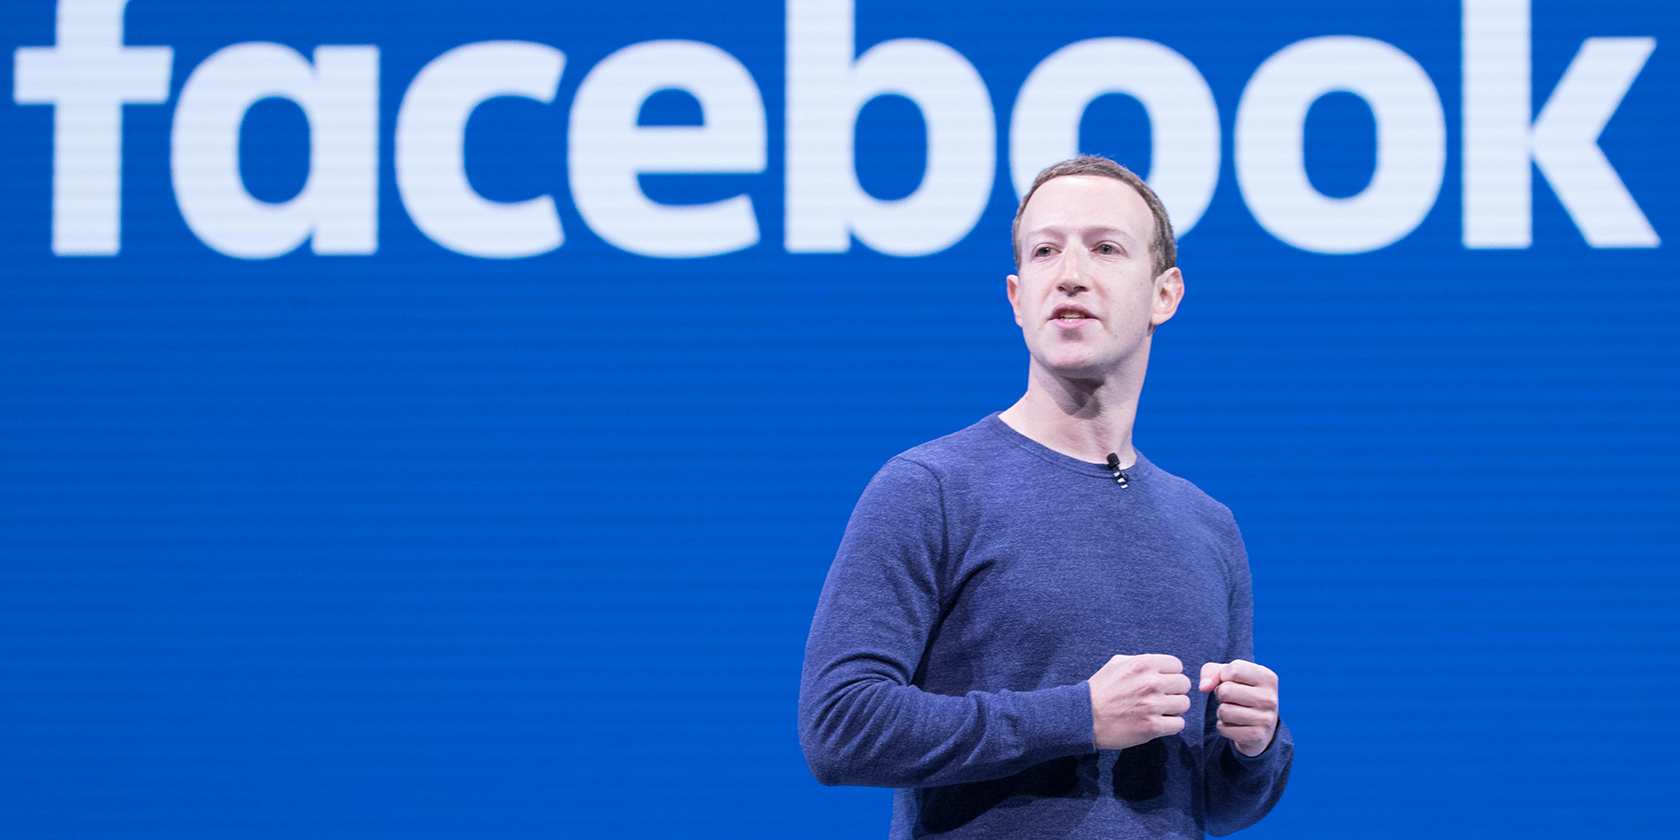 Mark Zuckerberg speaking at a Facebook event